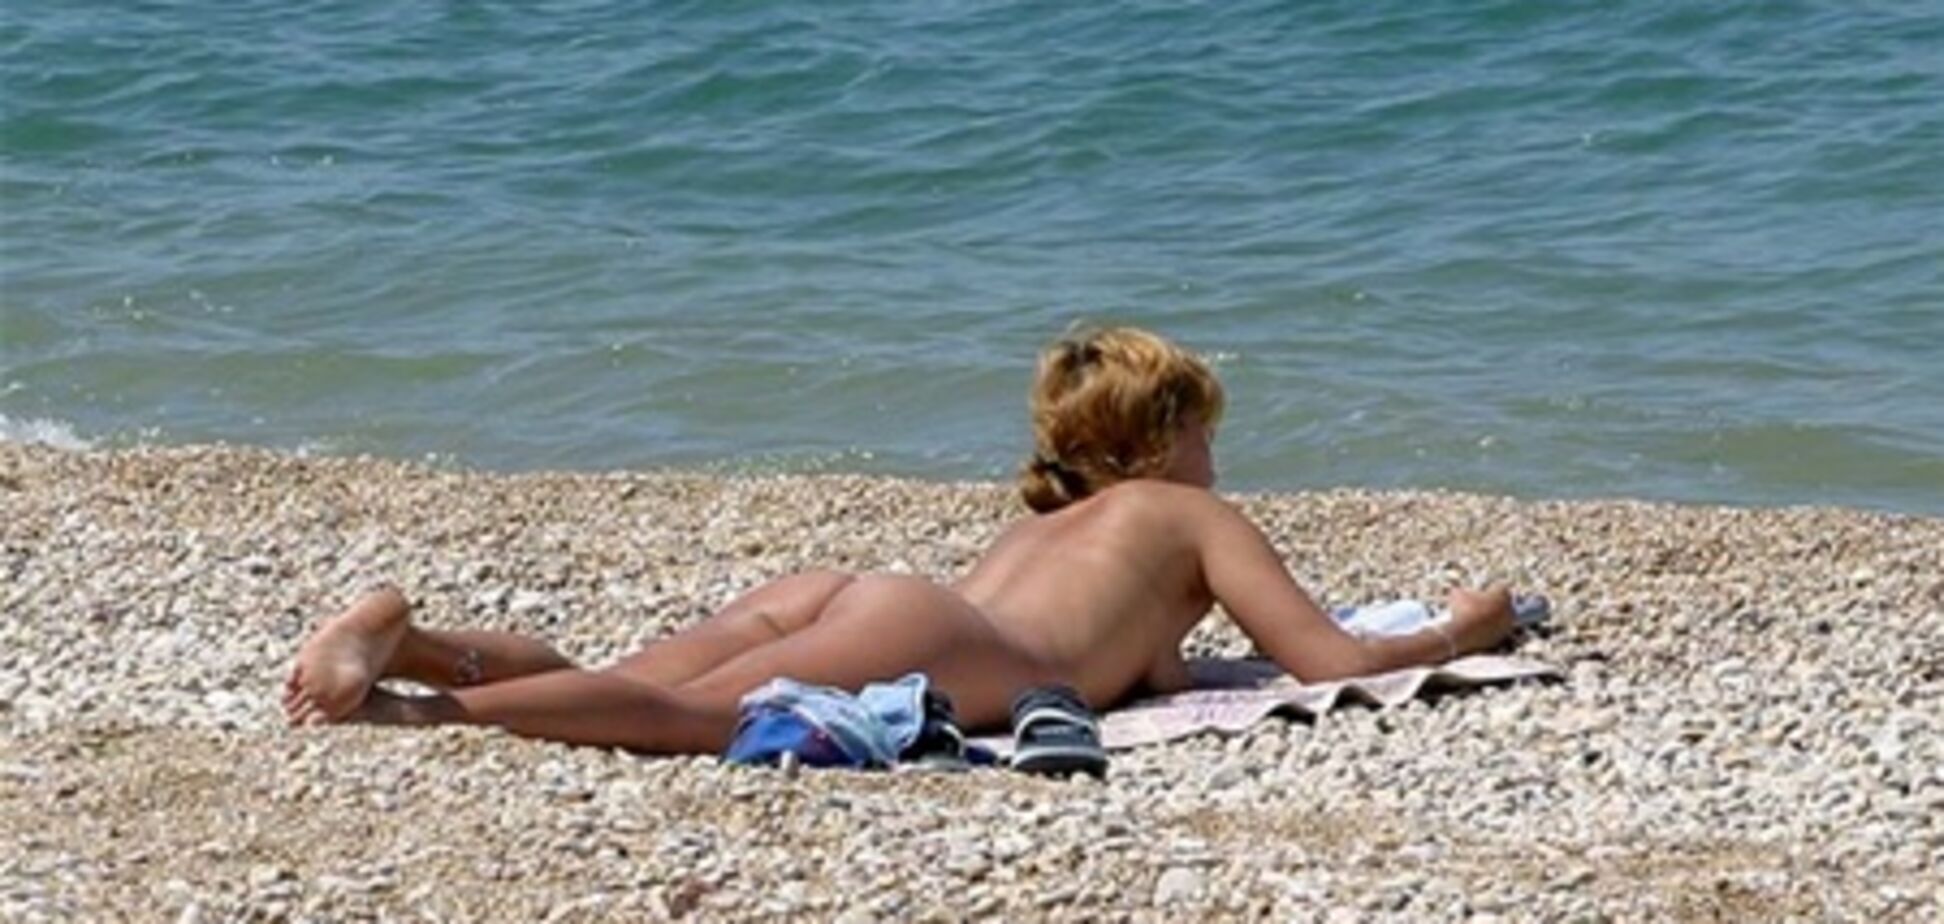 В Крыму будут штрафовать за желание оголиться на пляже